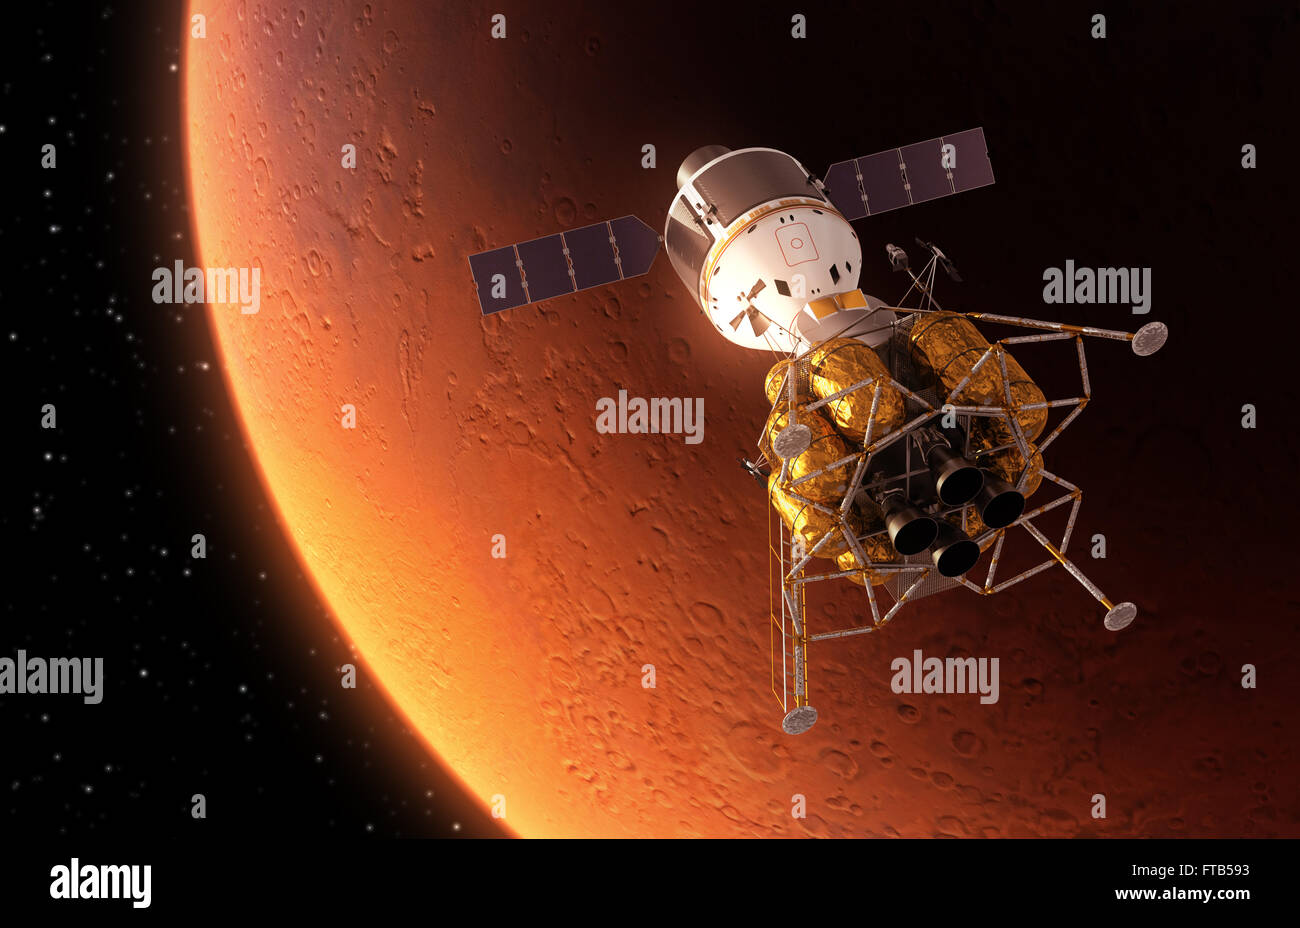 El Espacio Interplanetario estación orbitando Planeta Rojo Foto de stock